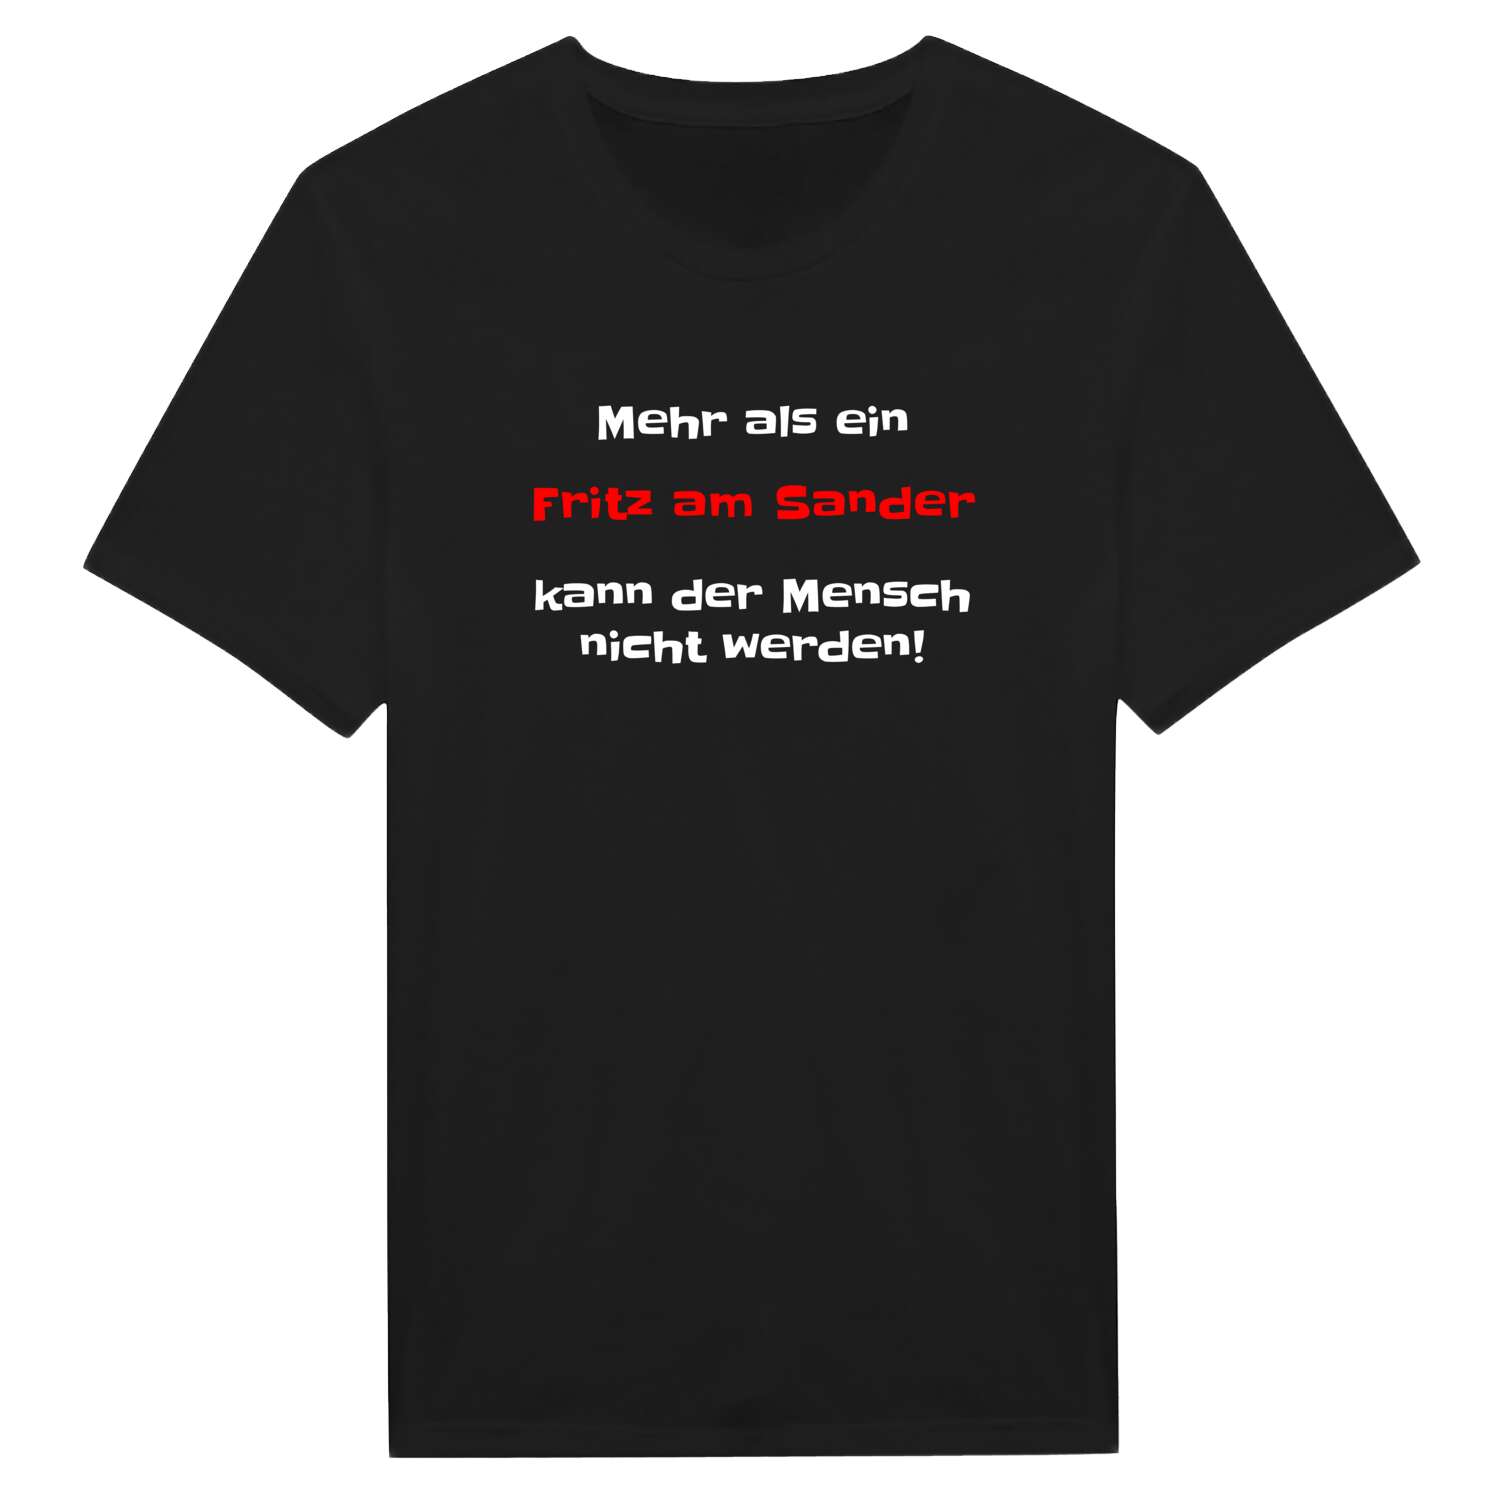 Fritz am Sand T-Shirt »Mehr als ein«